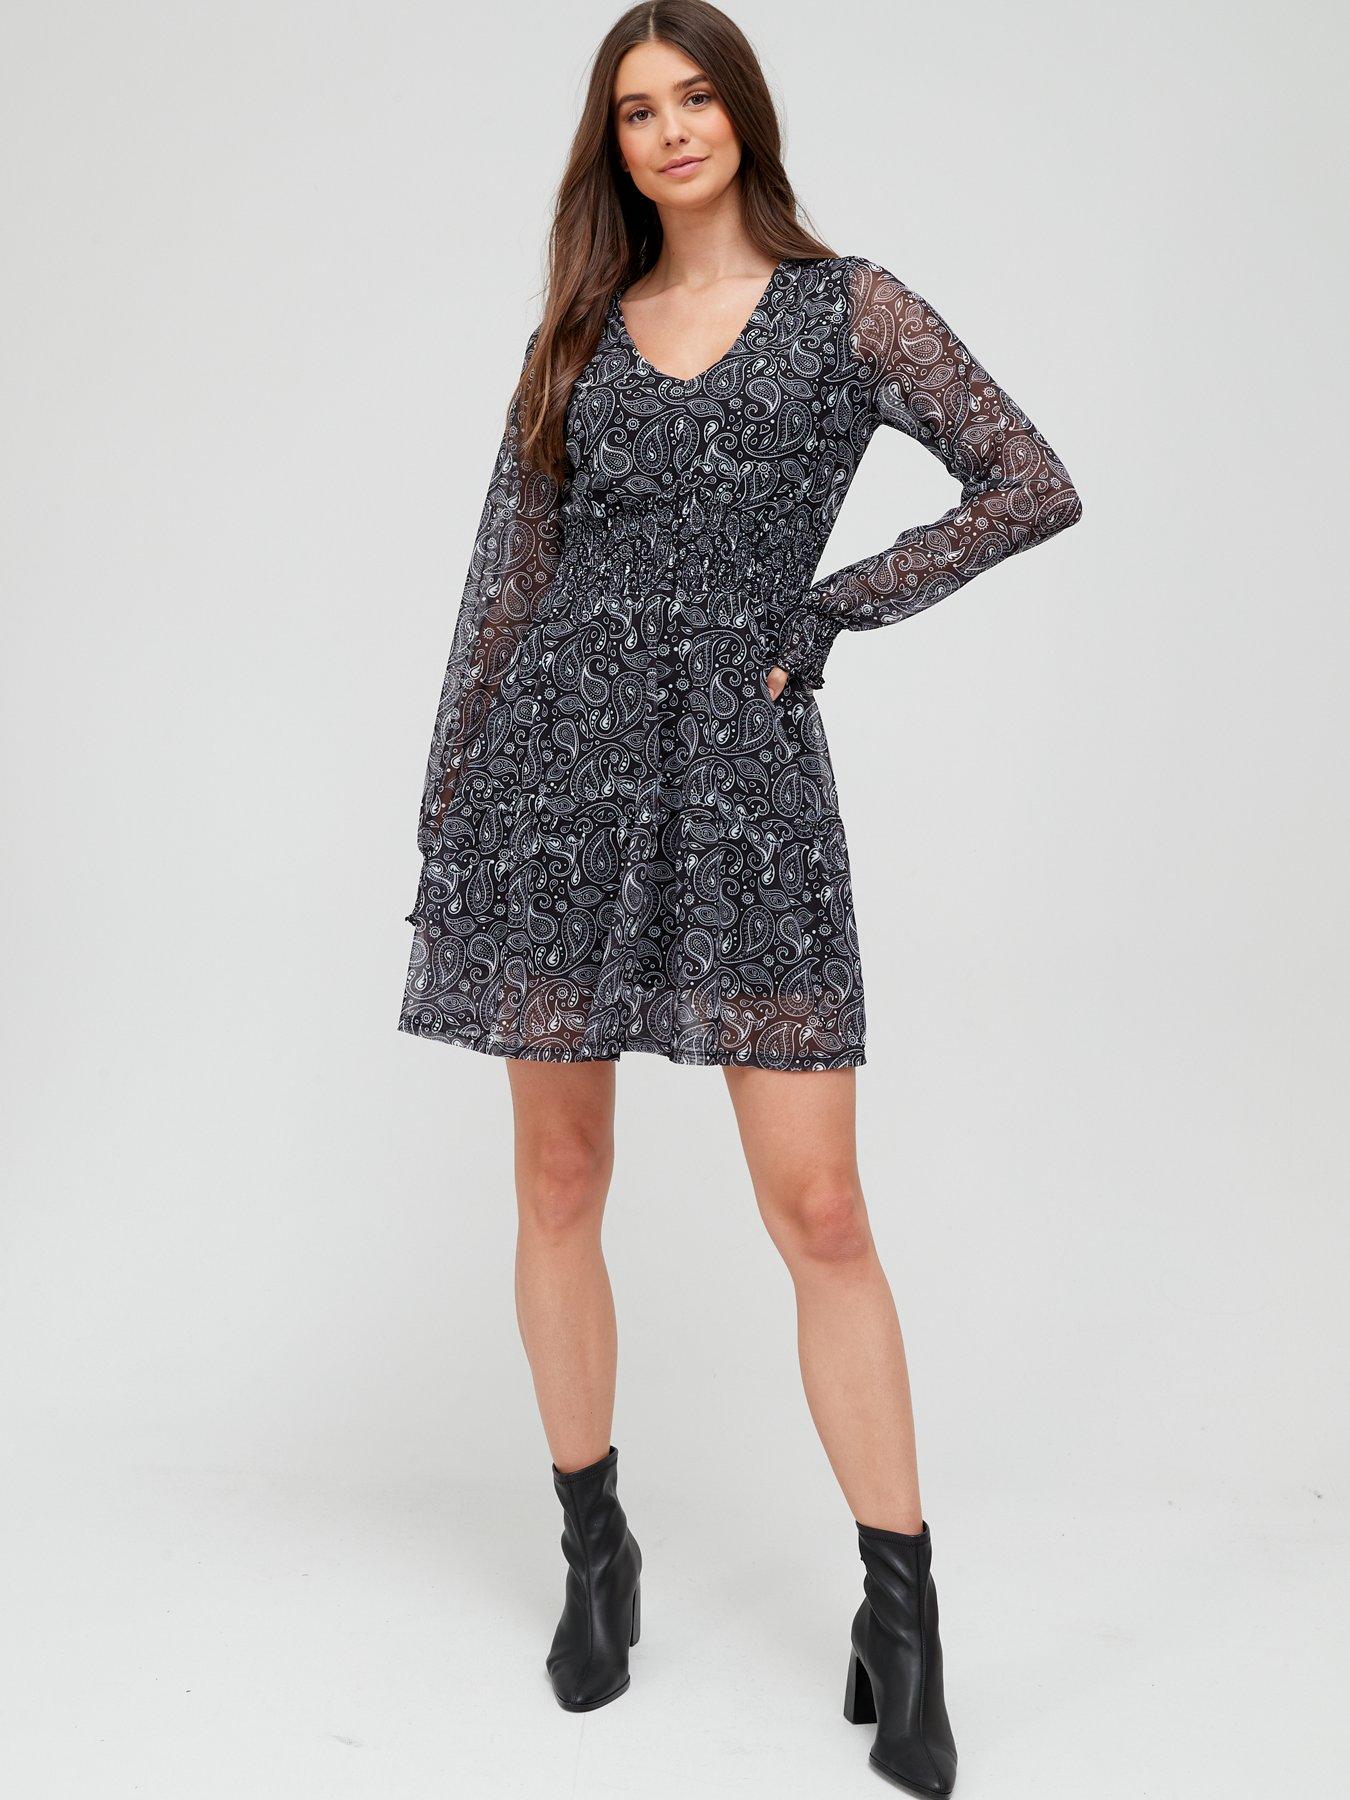  Paisley Mesh Mini Dress - Black/Print